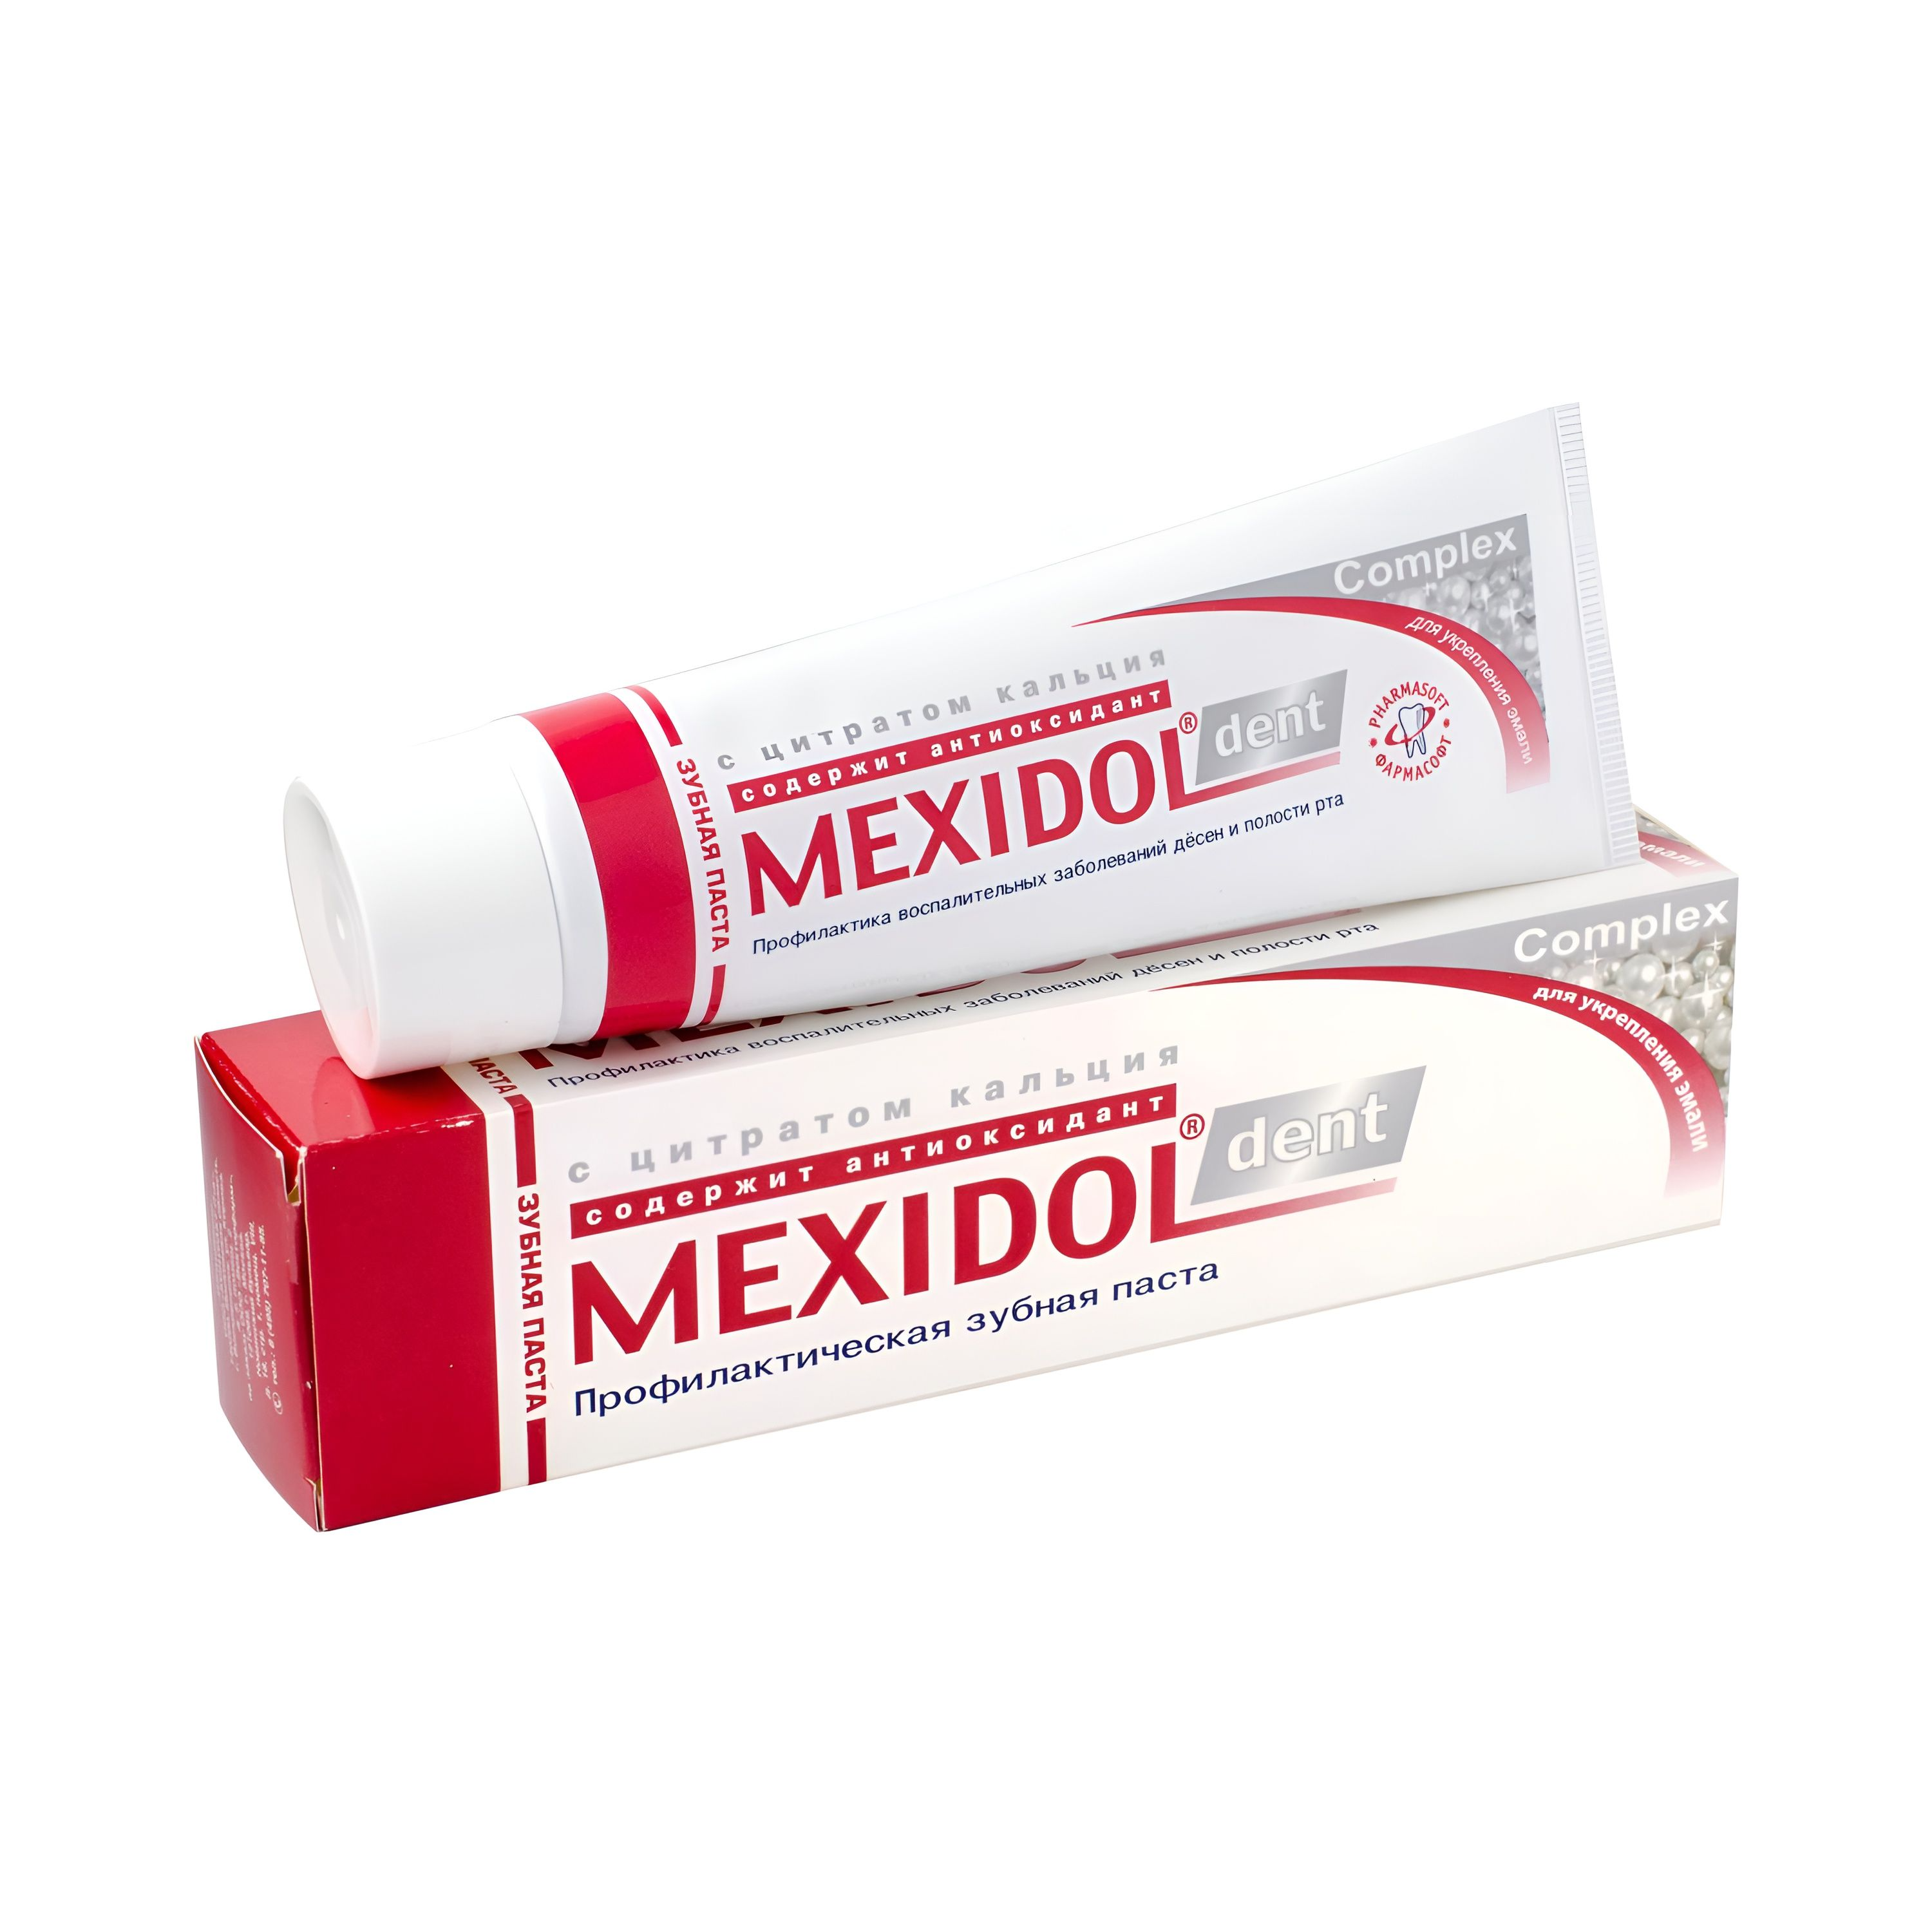 Мексидол Дент Комплекс, зубная паста, 65 г з паста мексидол дент сенситив 100г